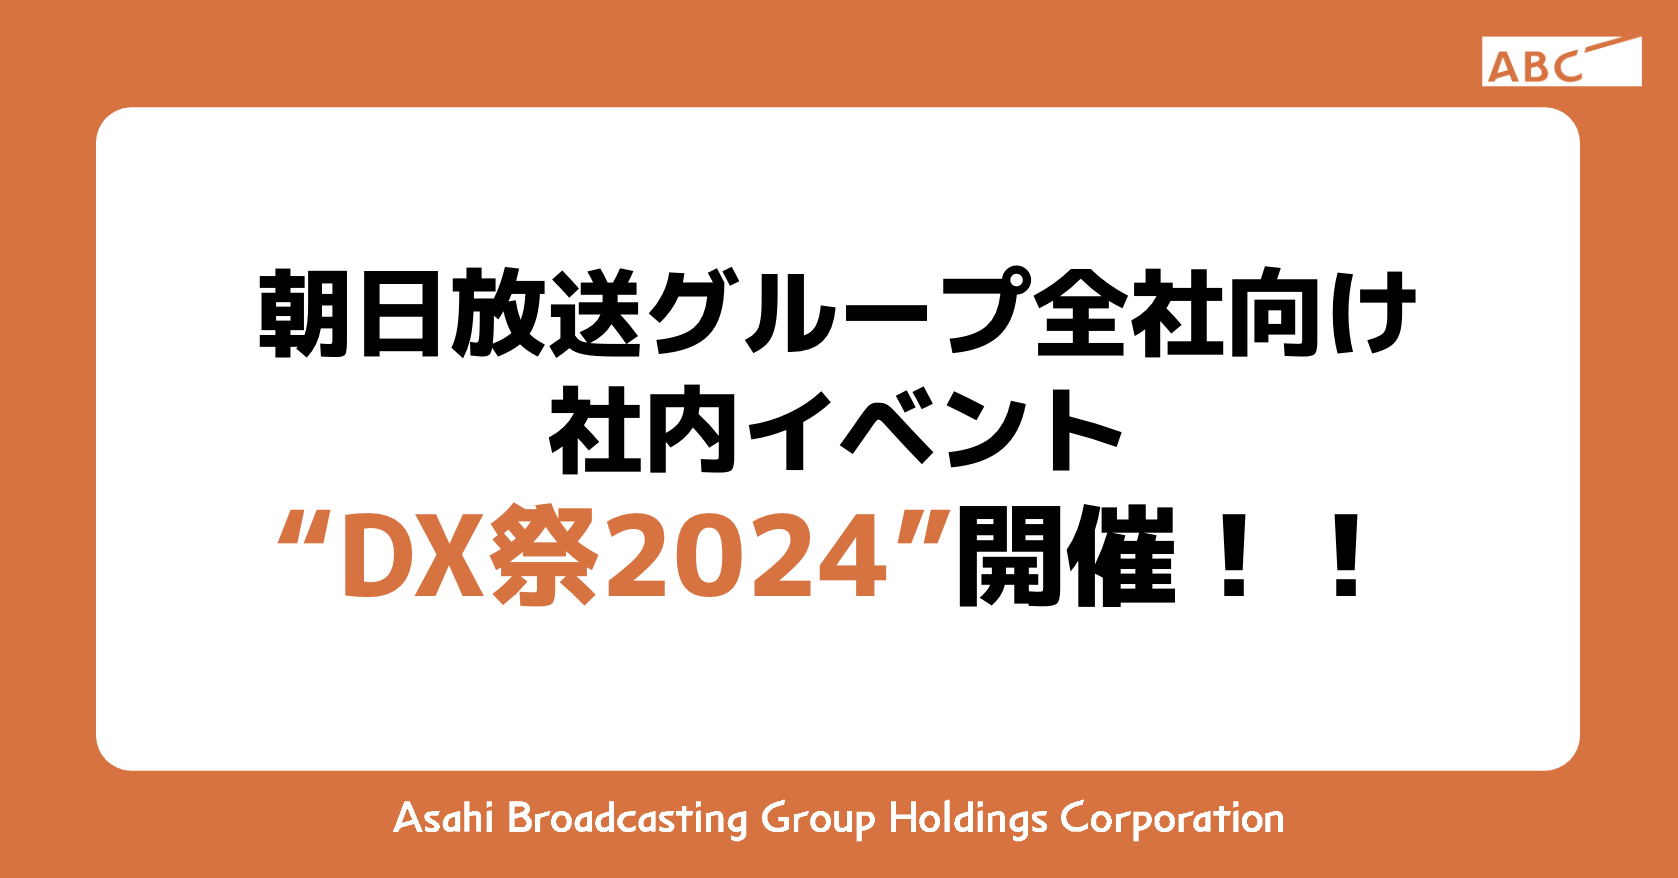 朝日放送グループ全社向け 社内イベント “DX祭2024”開催！！